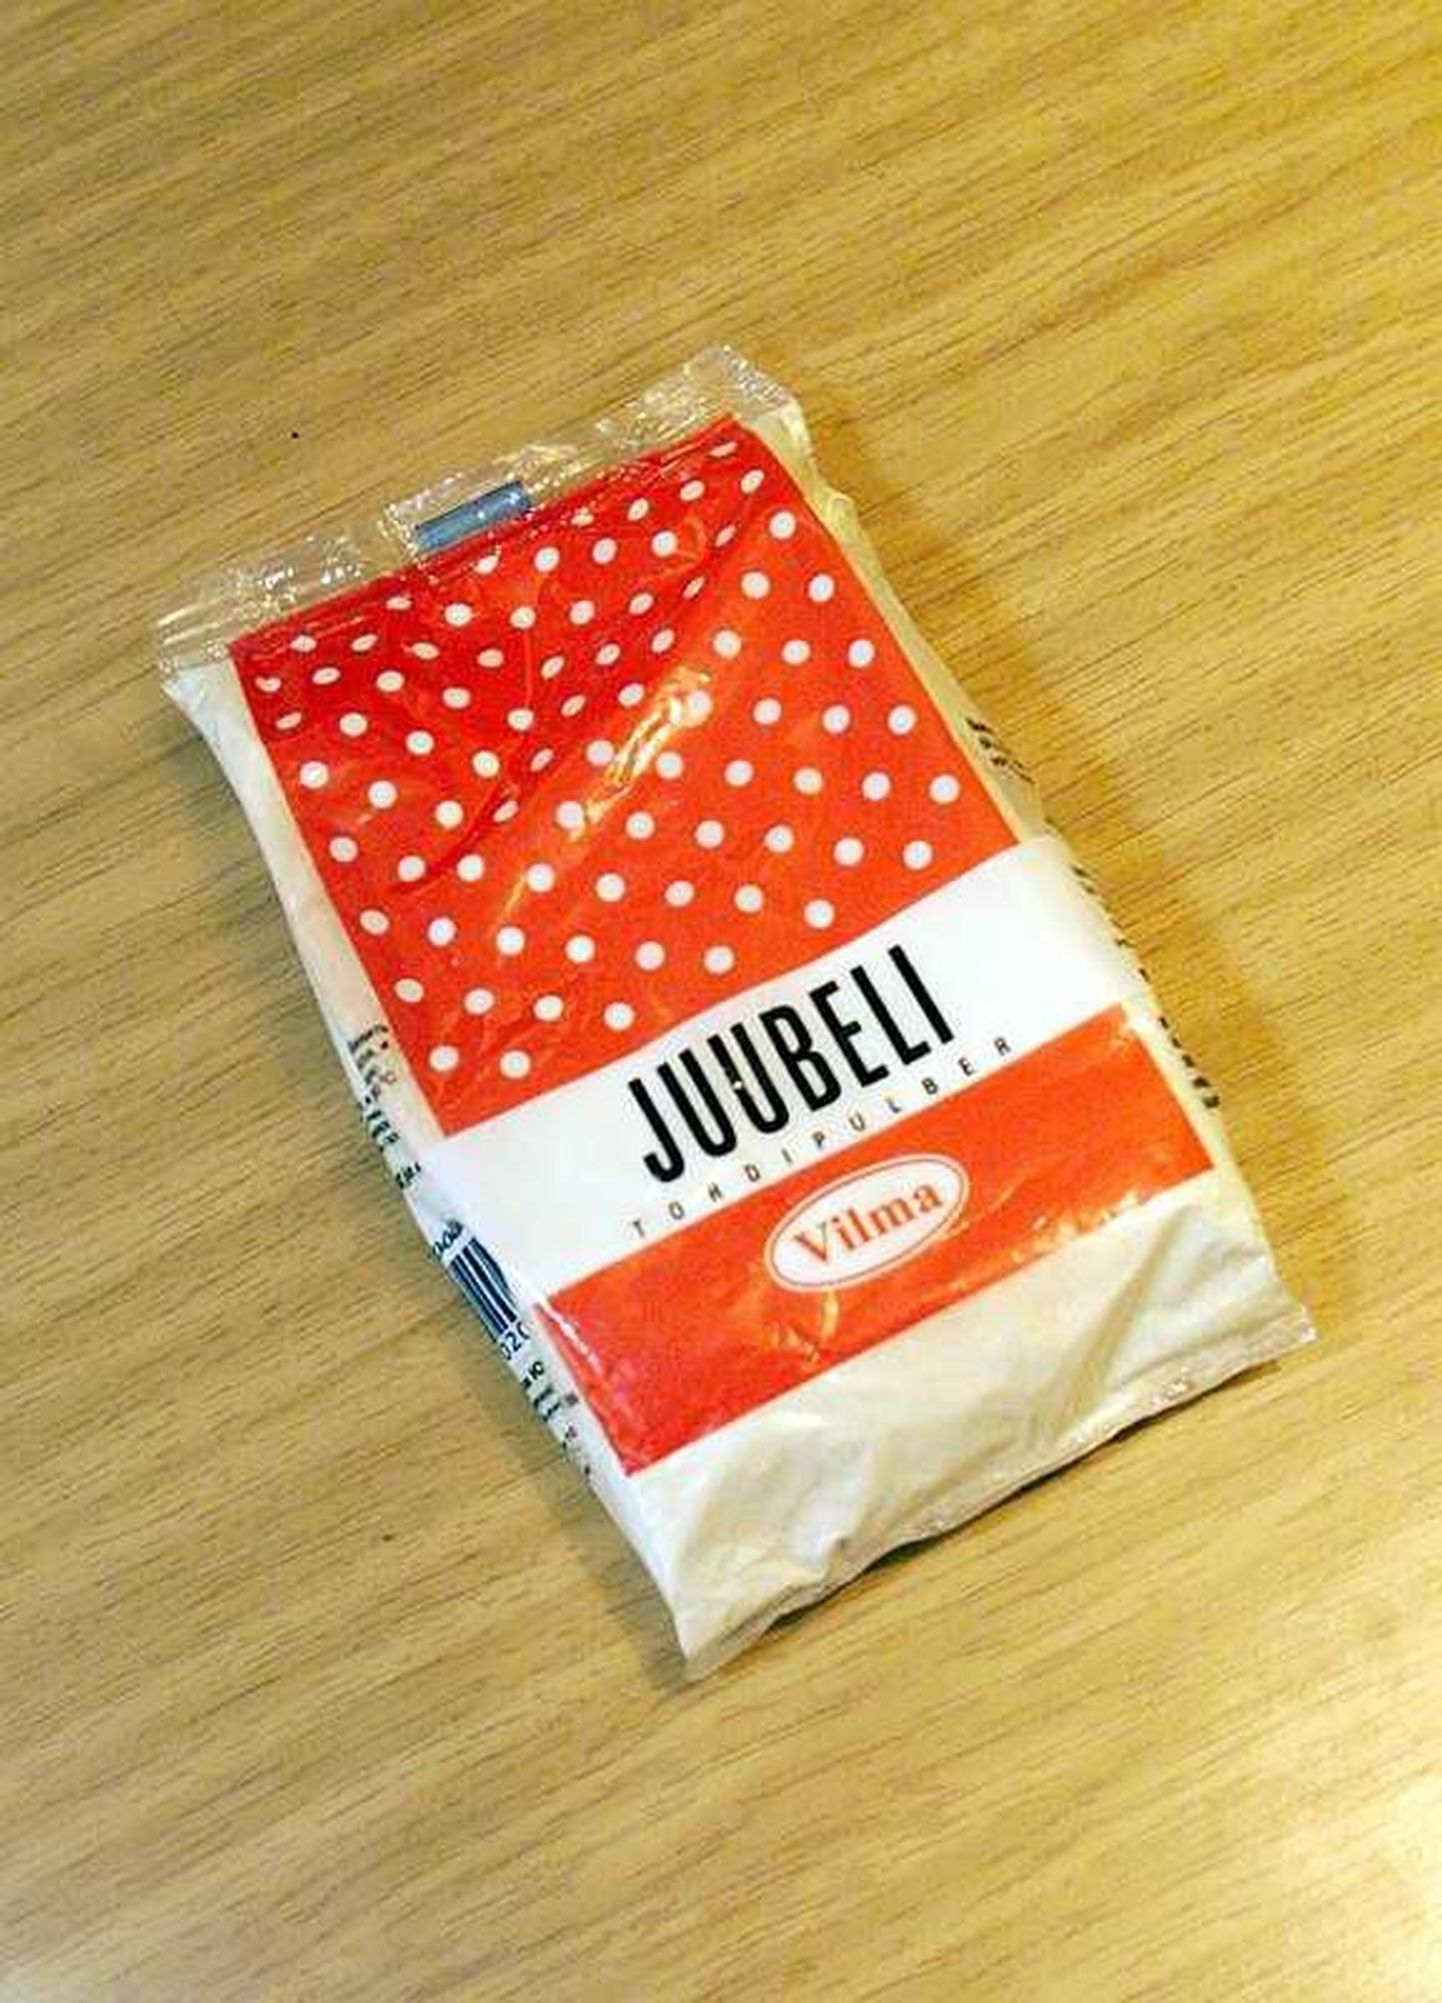 Vilma nime alla on Juubeli tordipulbrit toodetud juba aastakümneid.